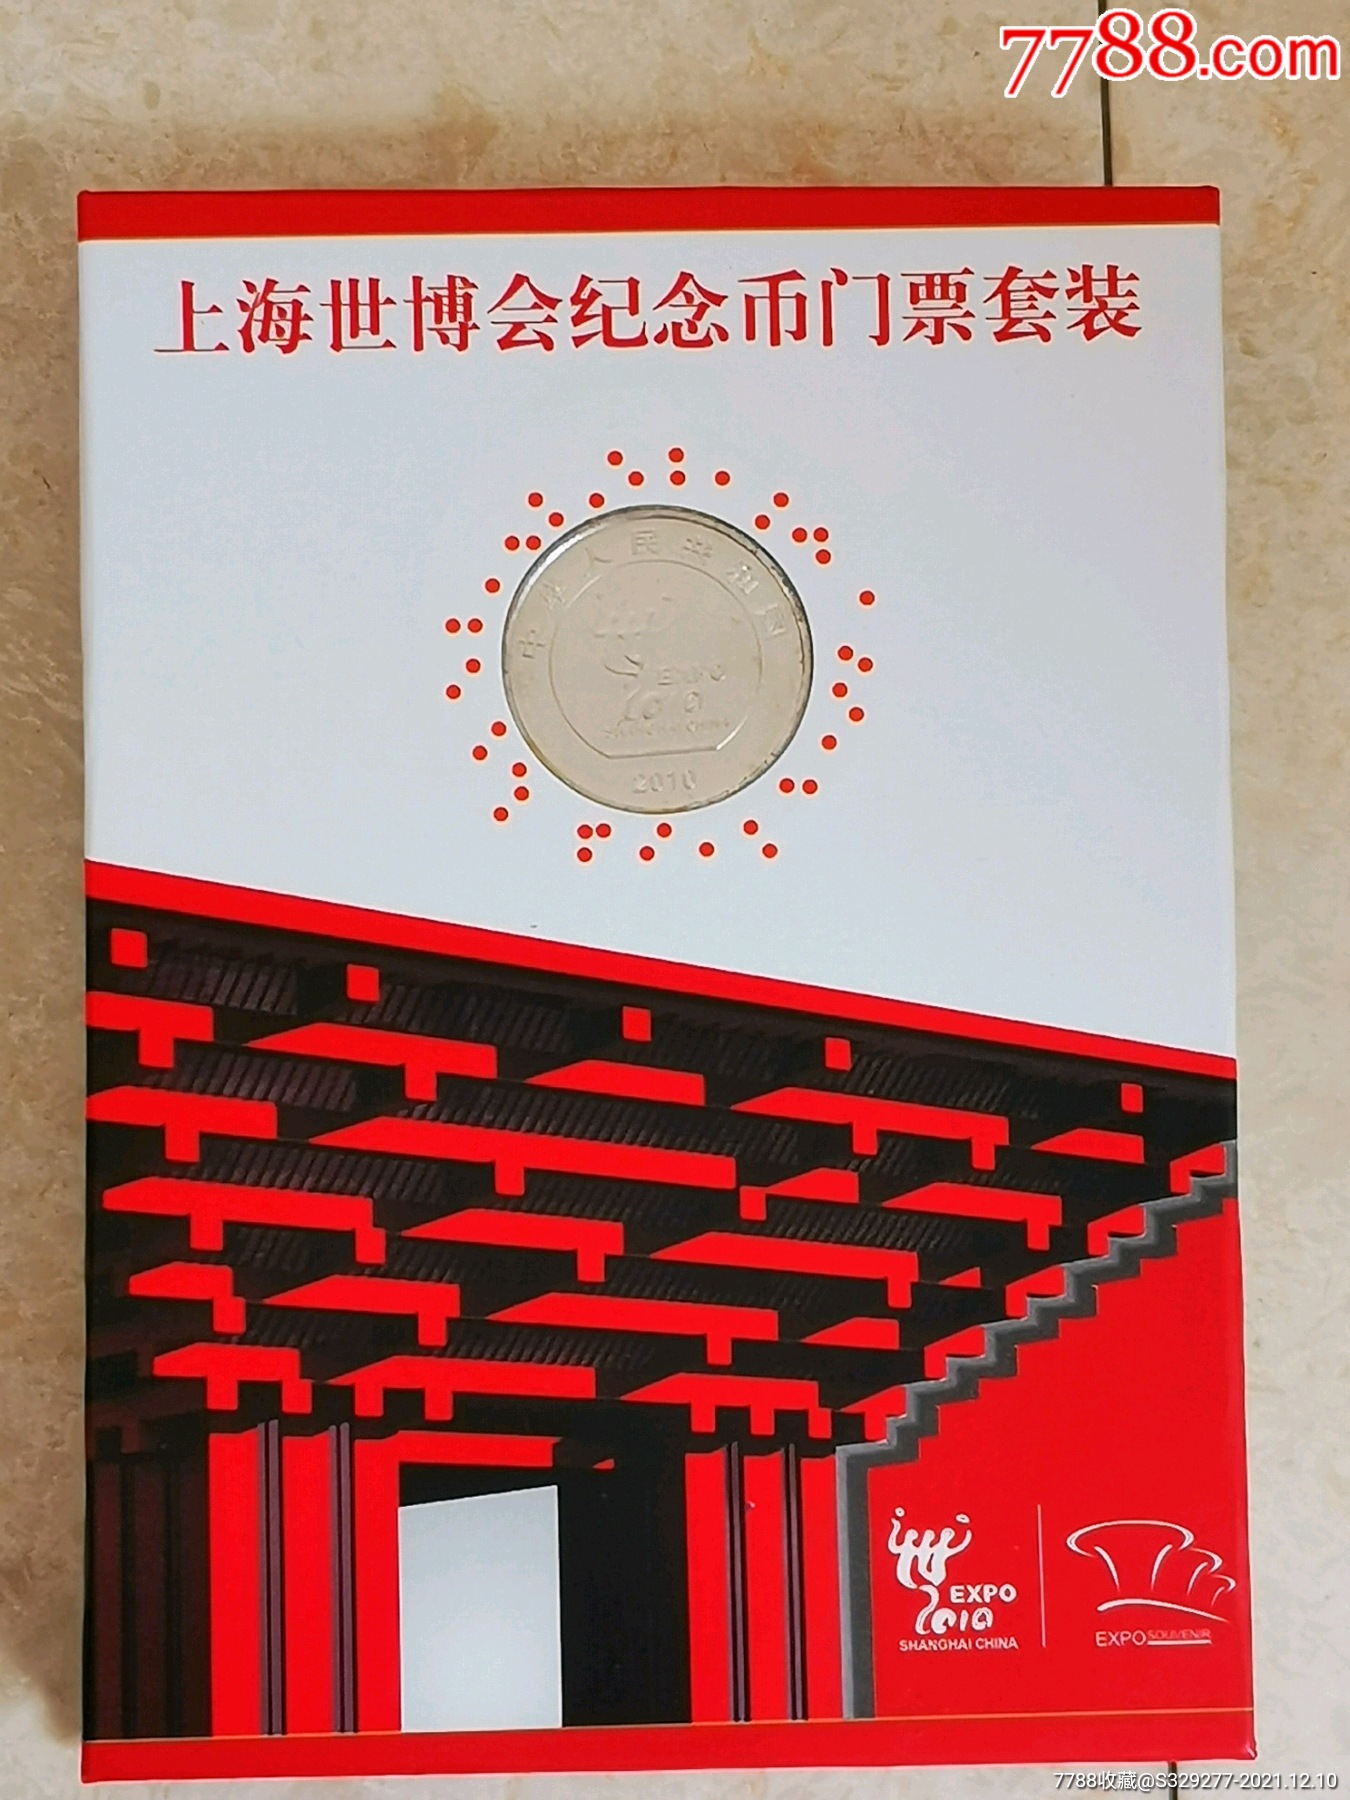 上海世博会纪念币门票套卡